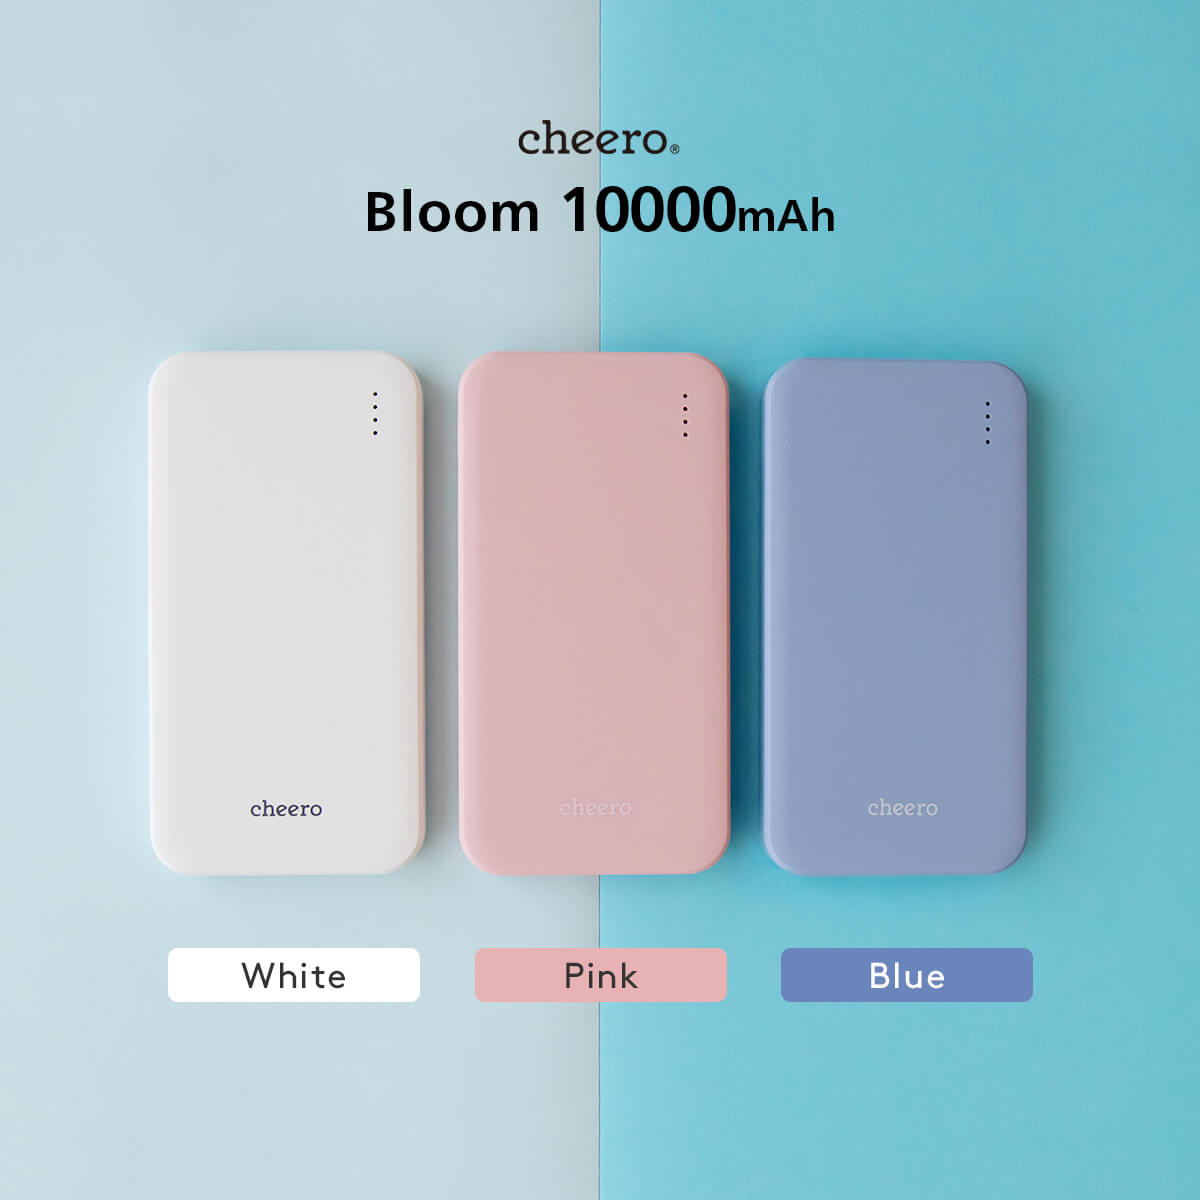 Cheero Bloom mah 安全安心 Cheero チーロ モバイルバッテリー